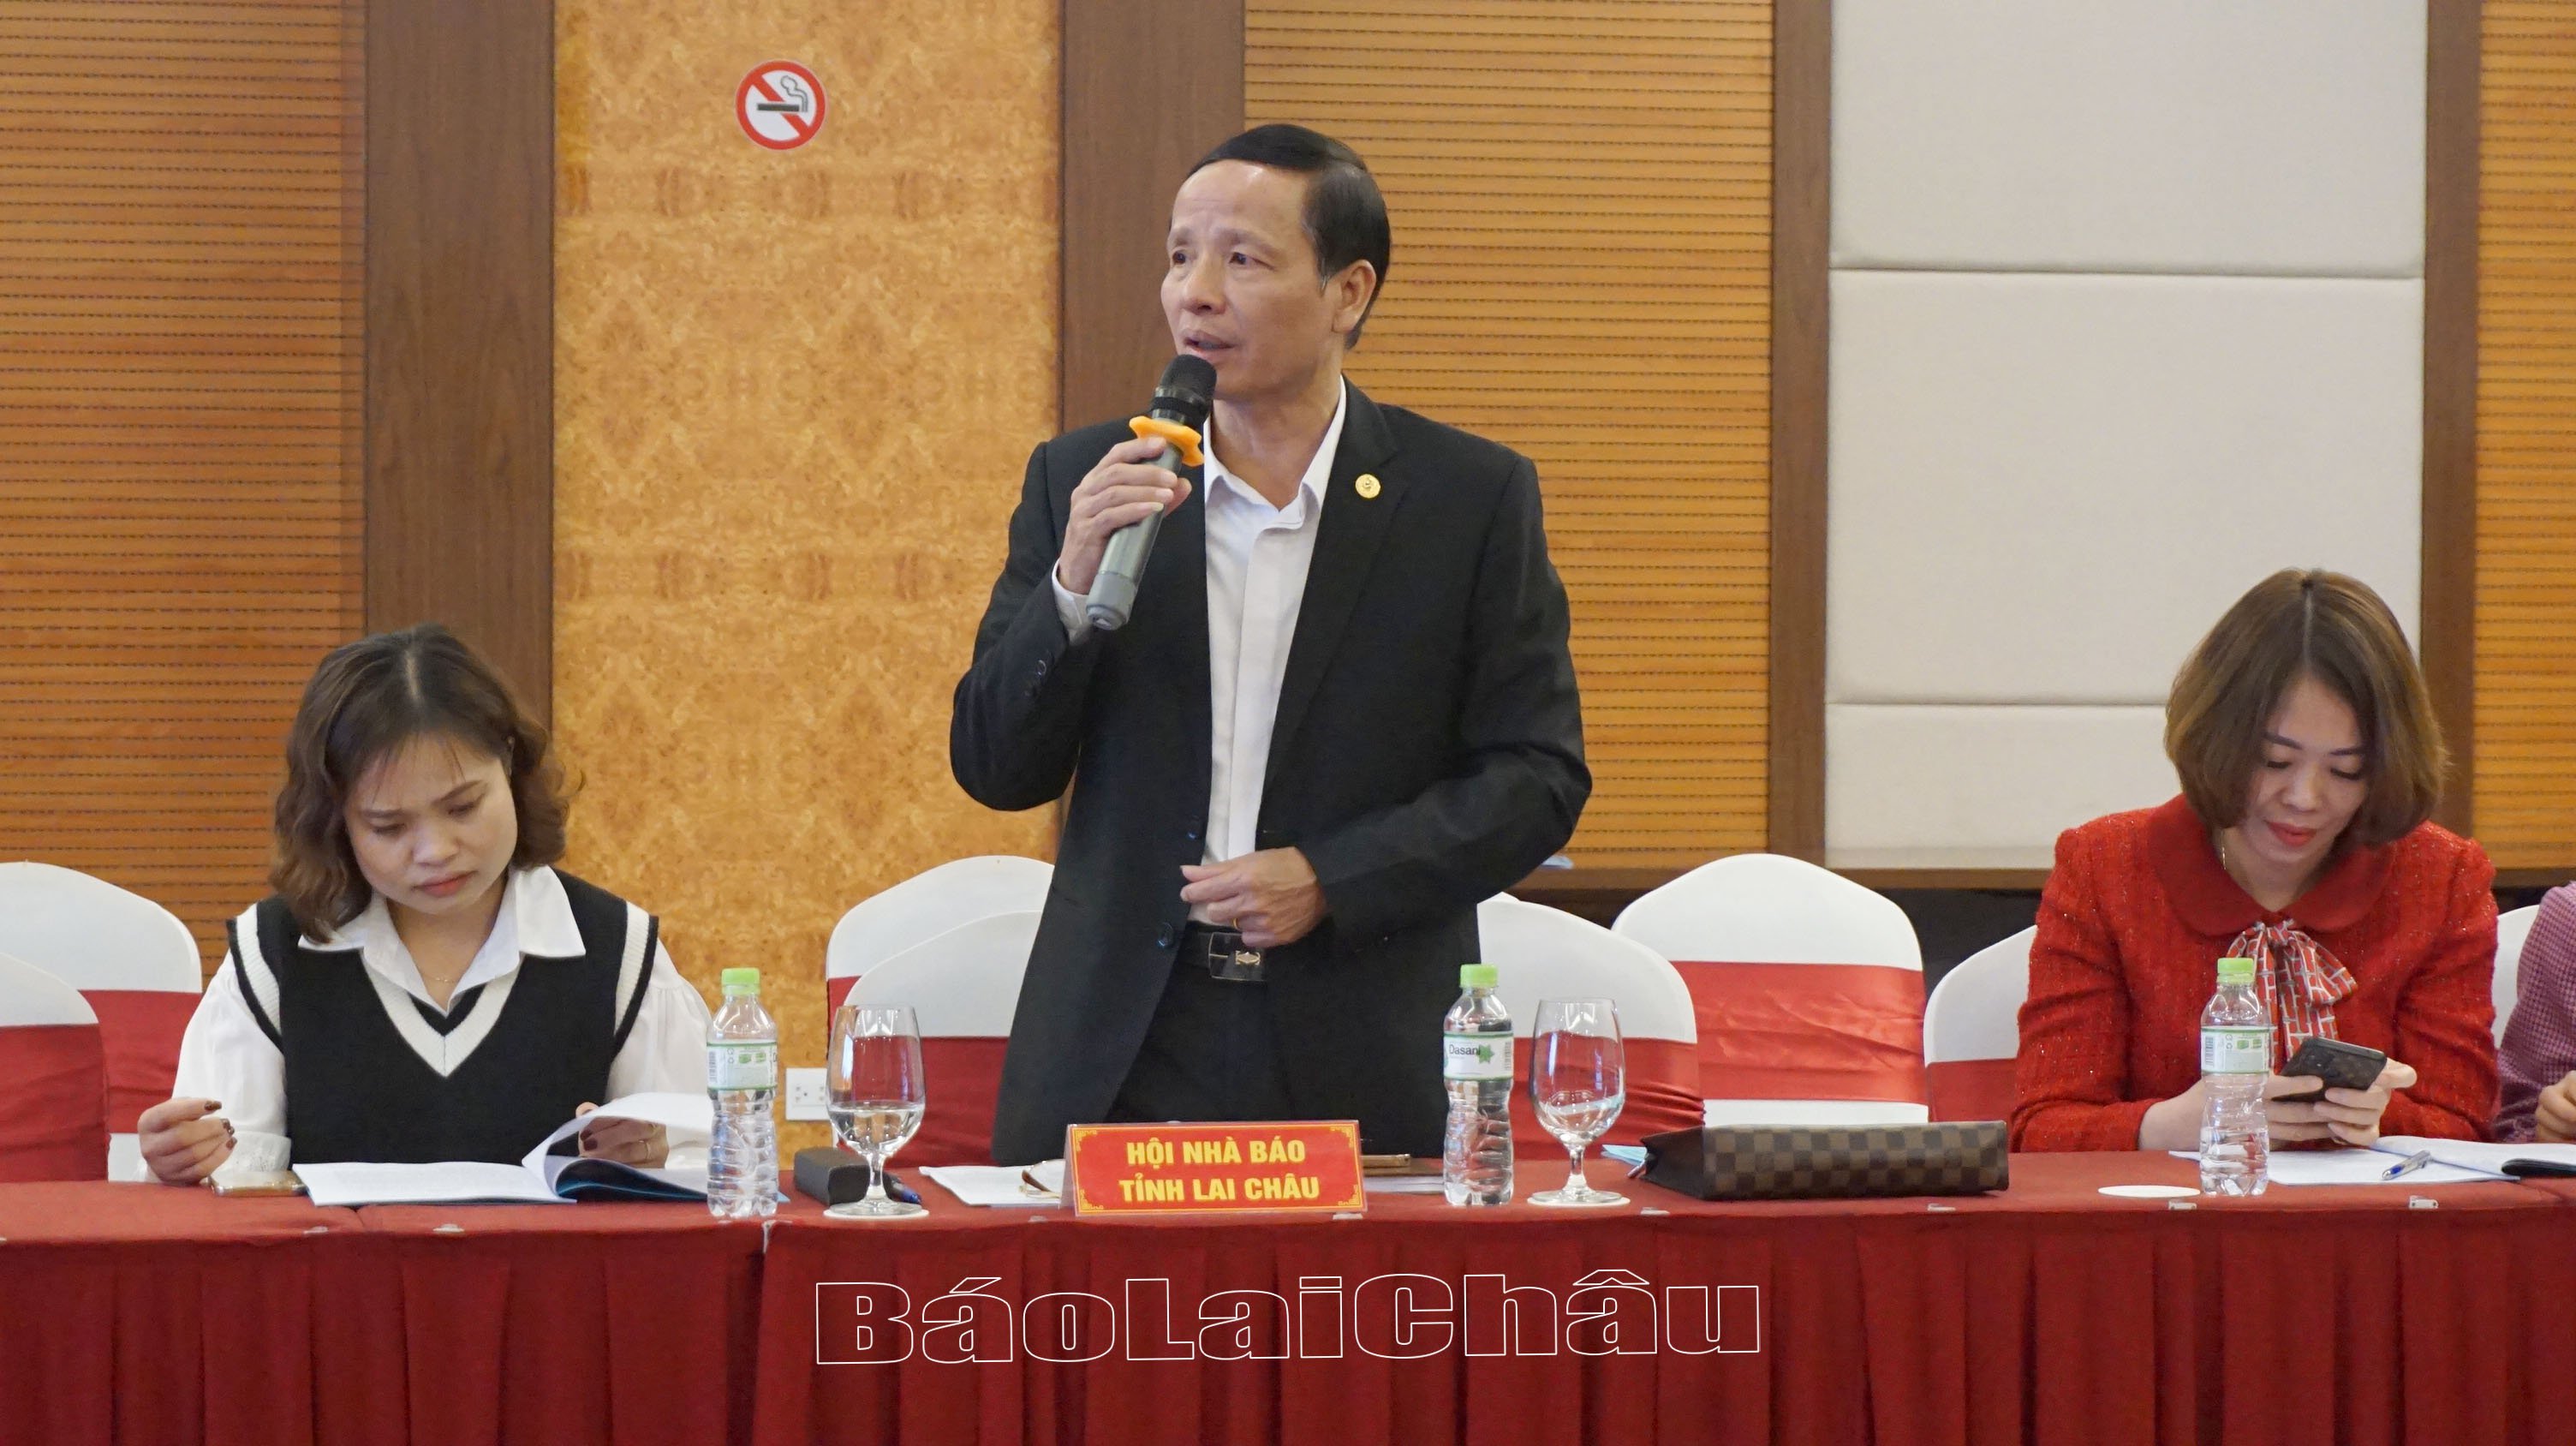 Đồng chí Nguyễn Viết Mạnh – Chủ tịch Hội Nhà báo, Tổng Biên tập Báo Lai Châu phát biểu thảo luận tại Hội nghị.